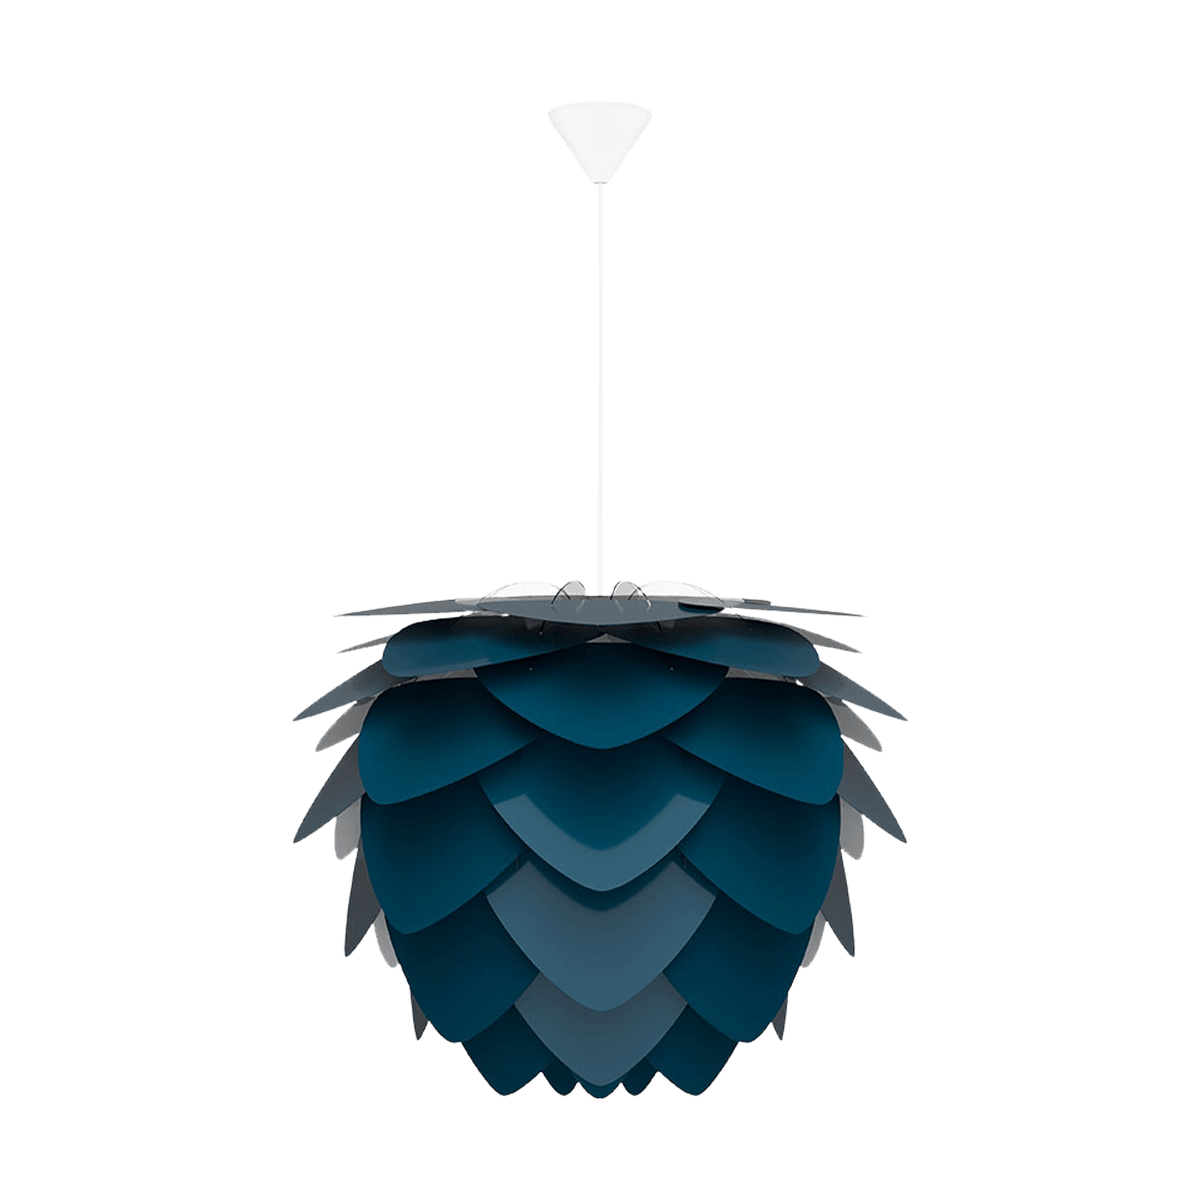 Aluvia Medium hanglamp petrol blue - met koordset wit - Ø 59 cm